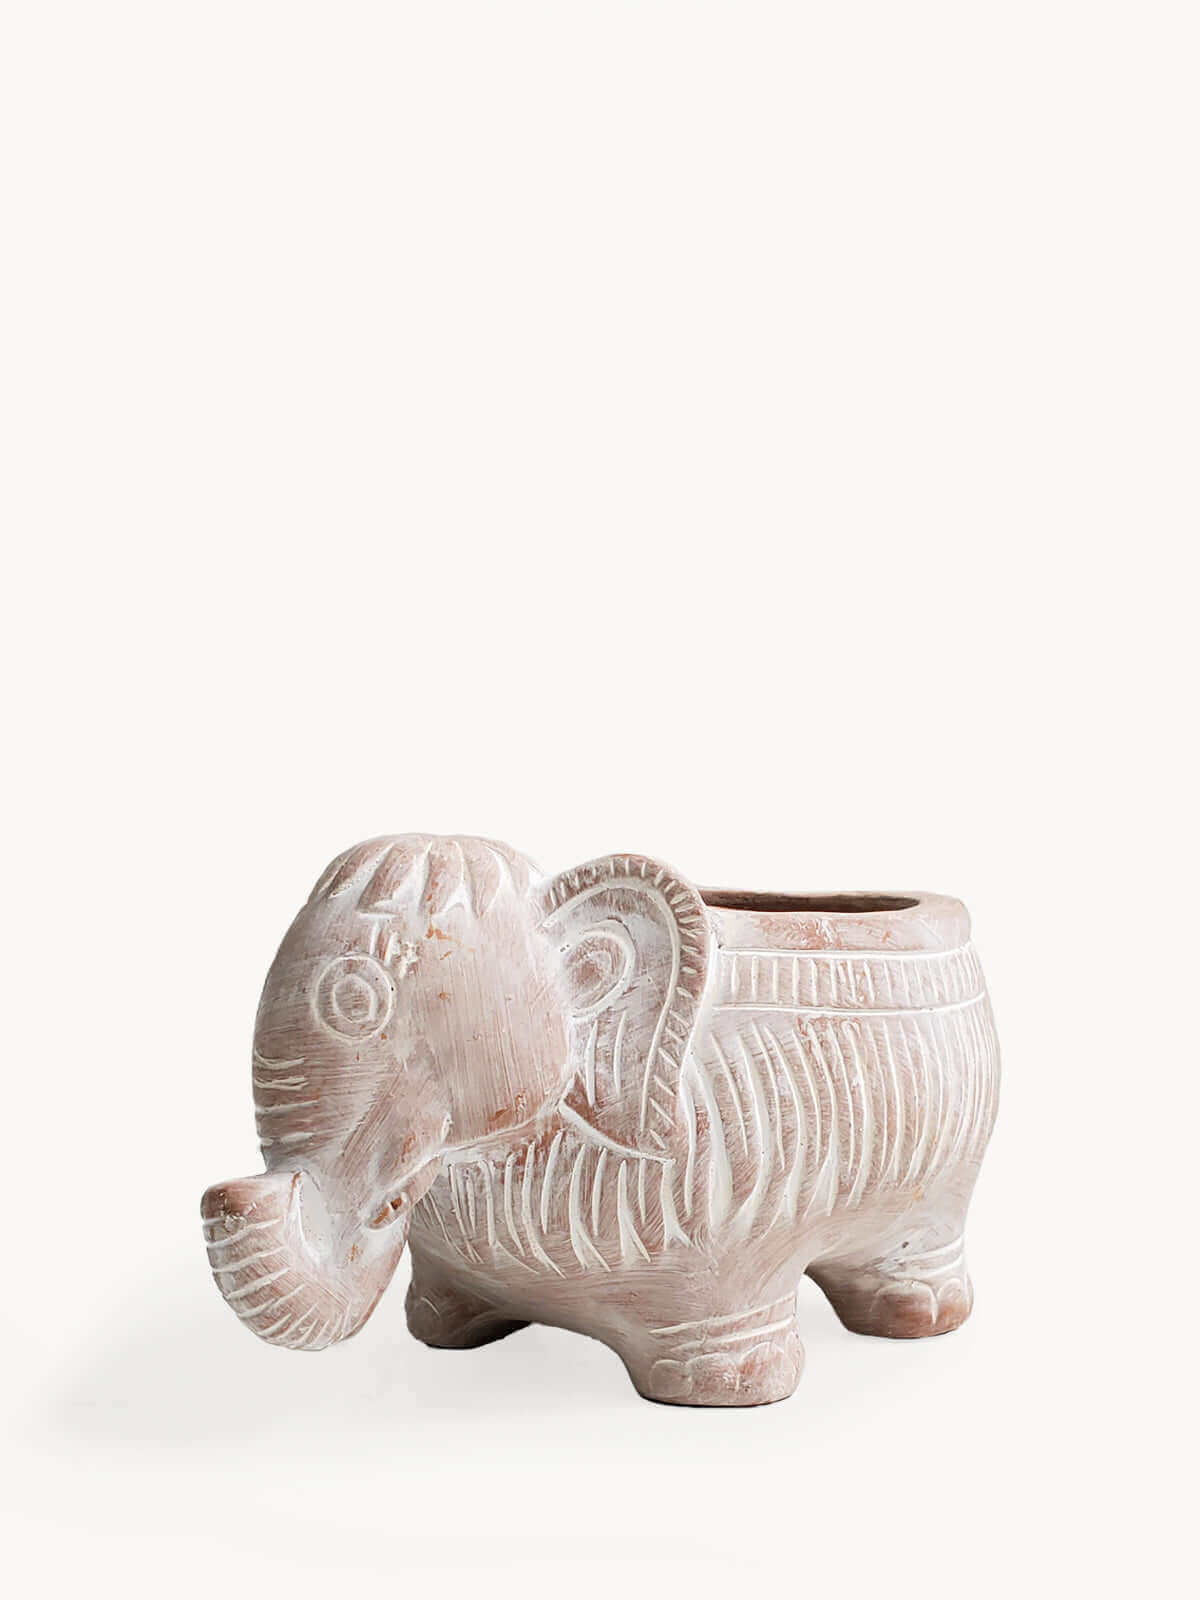 Terracotta Pot - Elephant-0